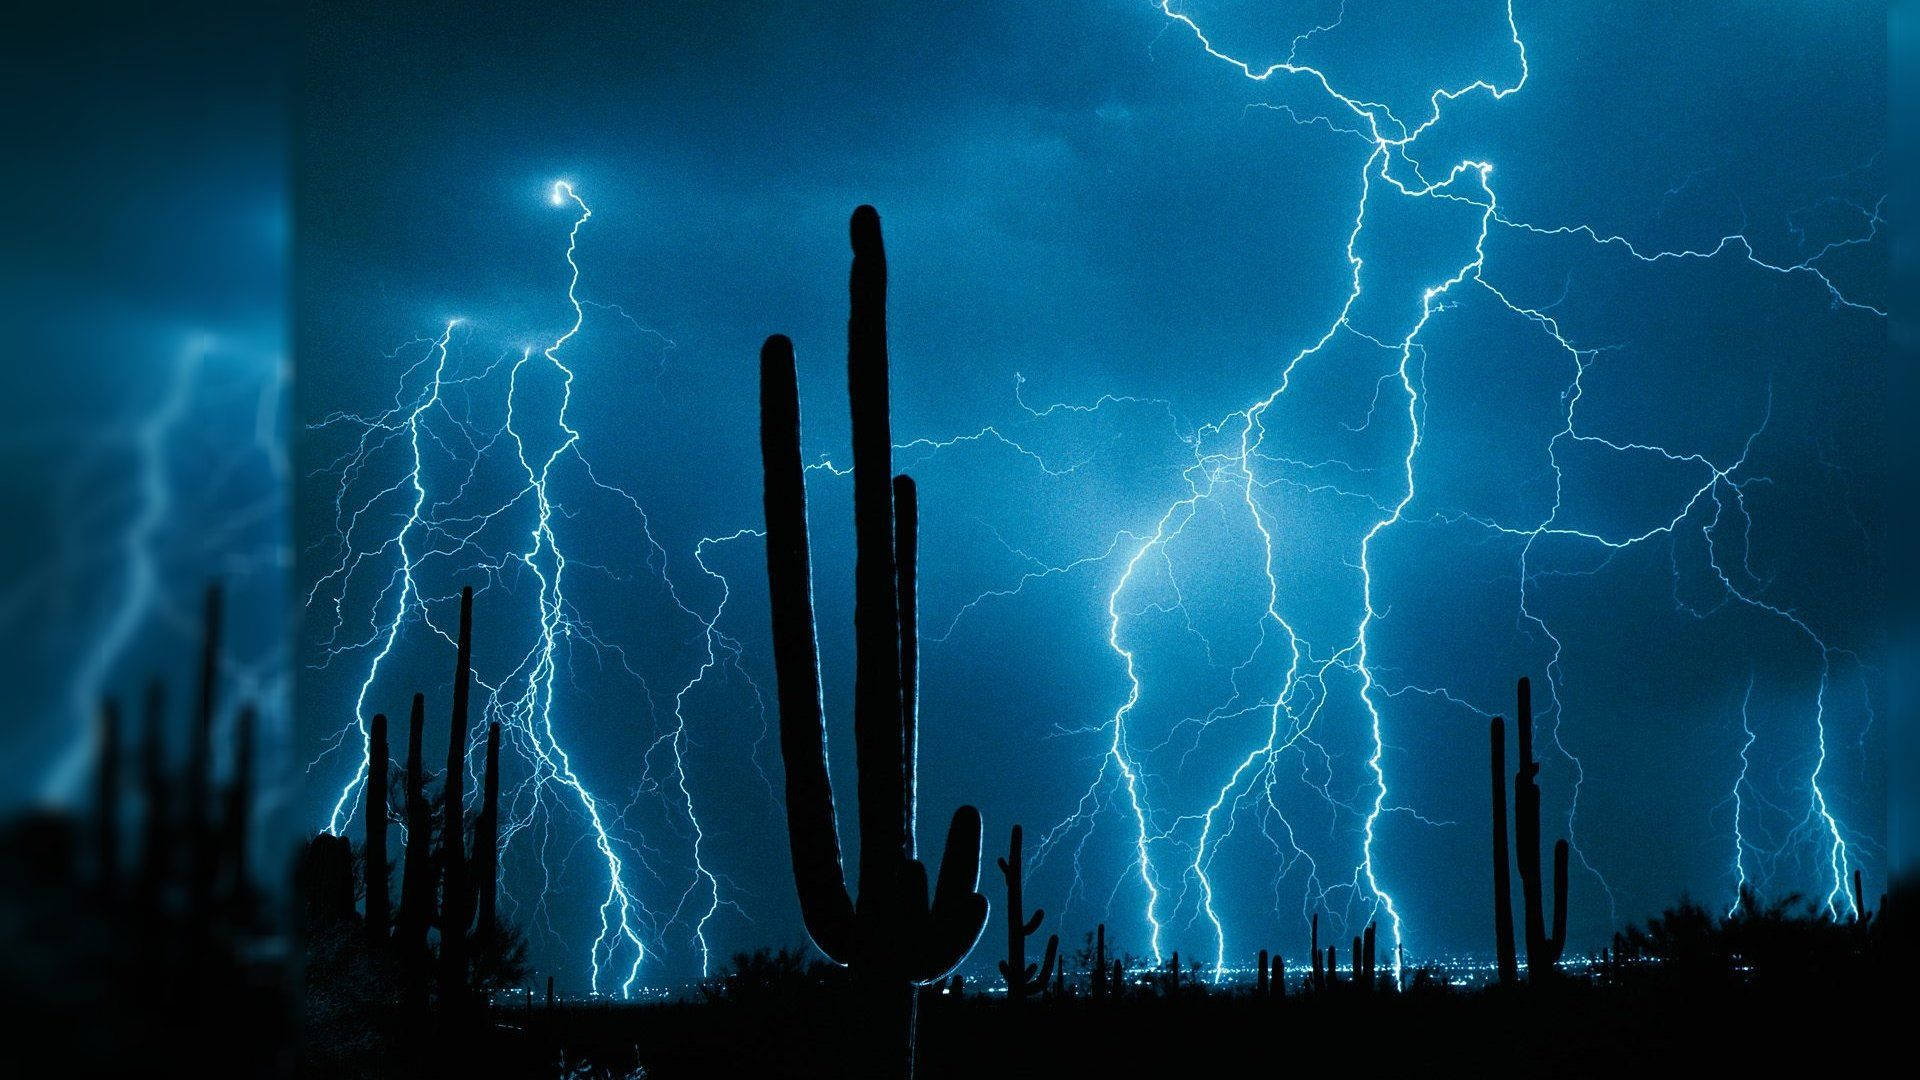 Desert Lightning Live 3d